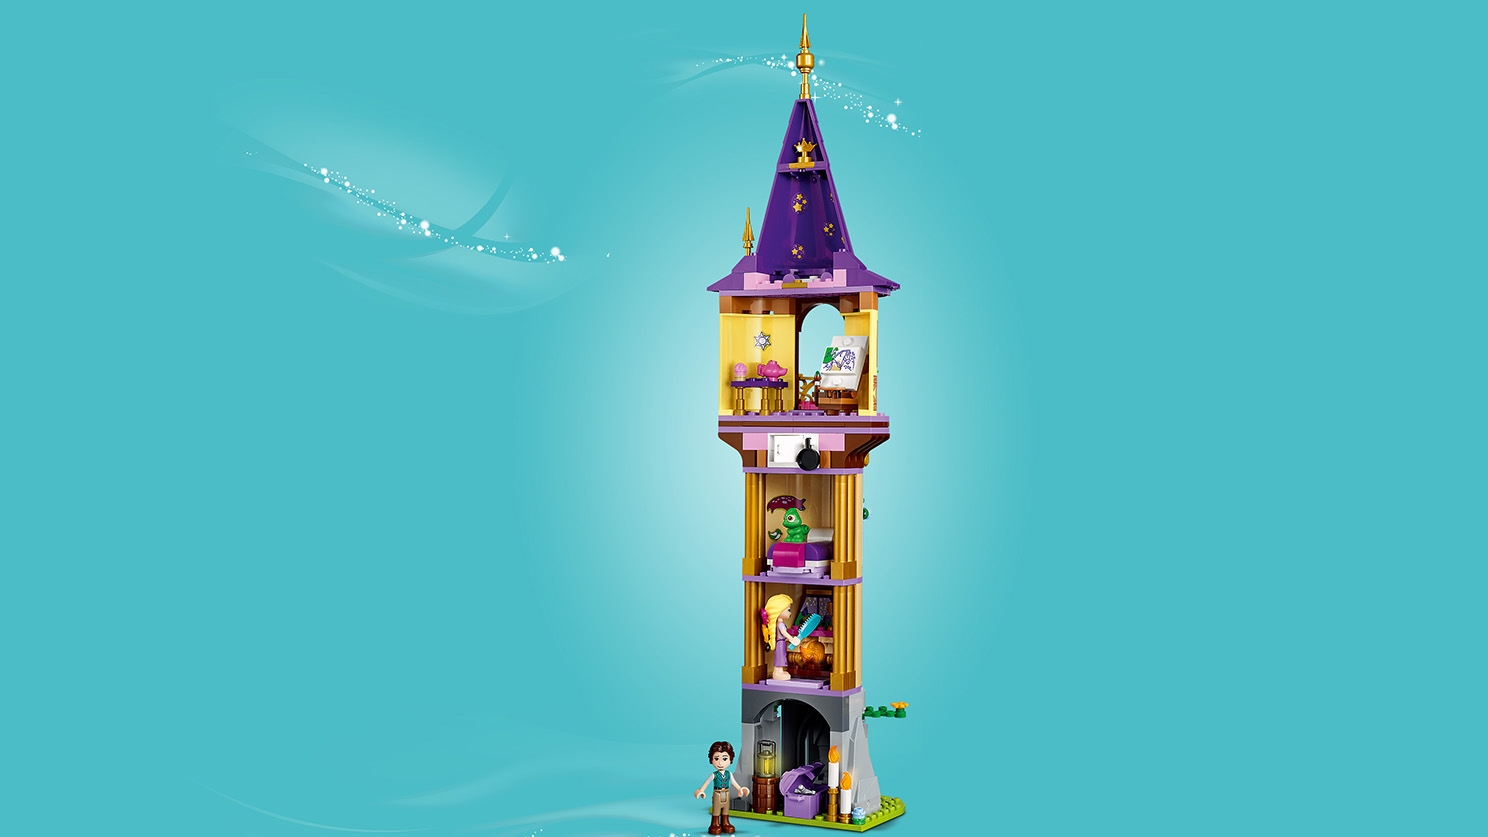 ラプンツェルの塔 43187 - レゴ® |ディズニーセット - LEGO.comキッズ